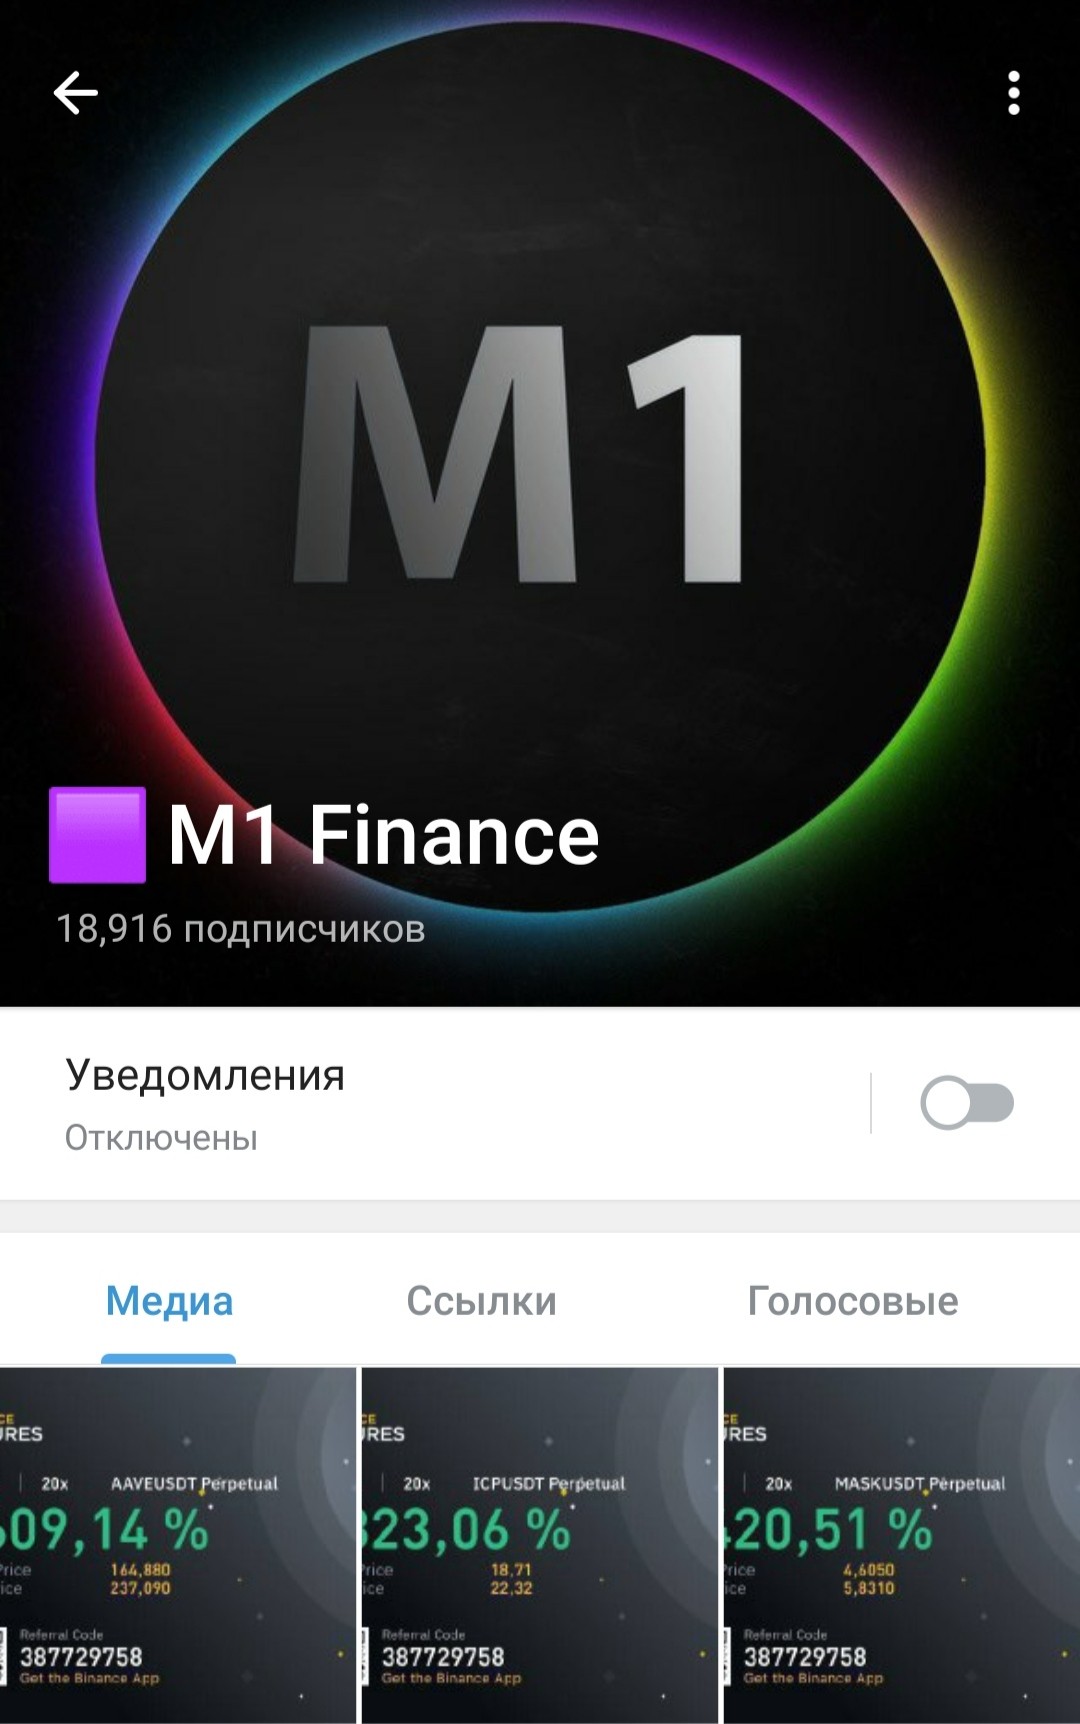 Телеграм M1 Finance обзор